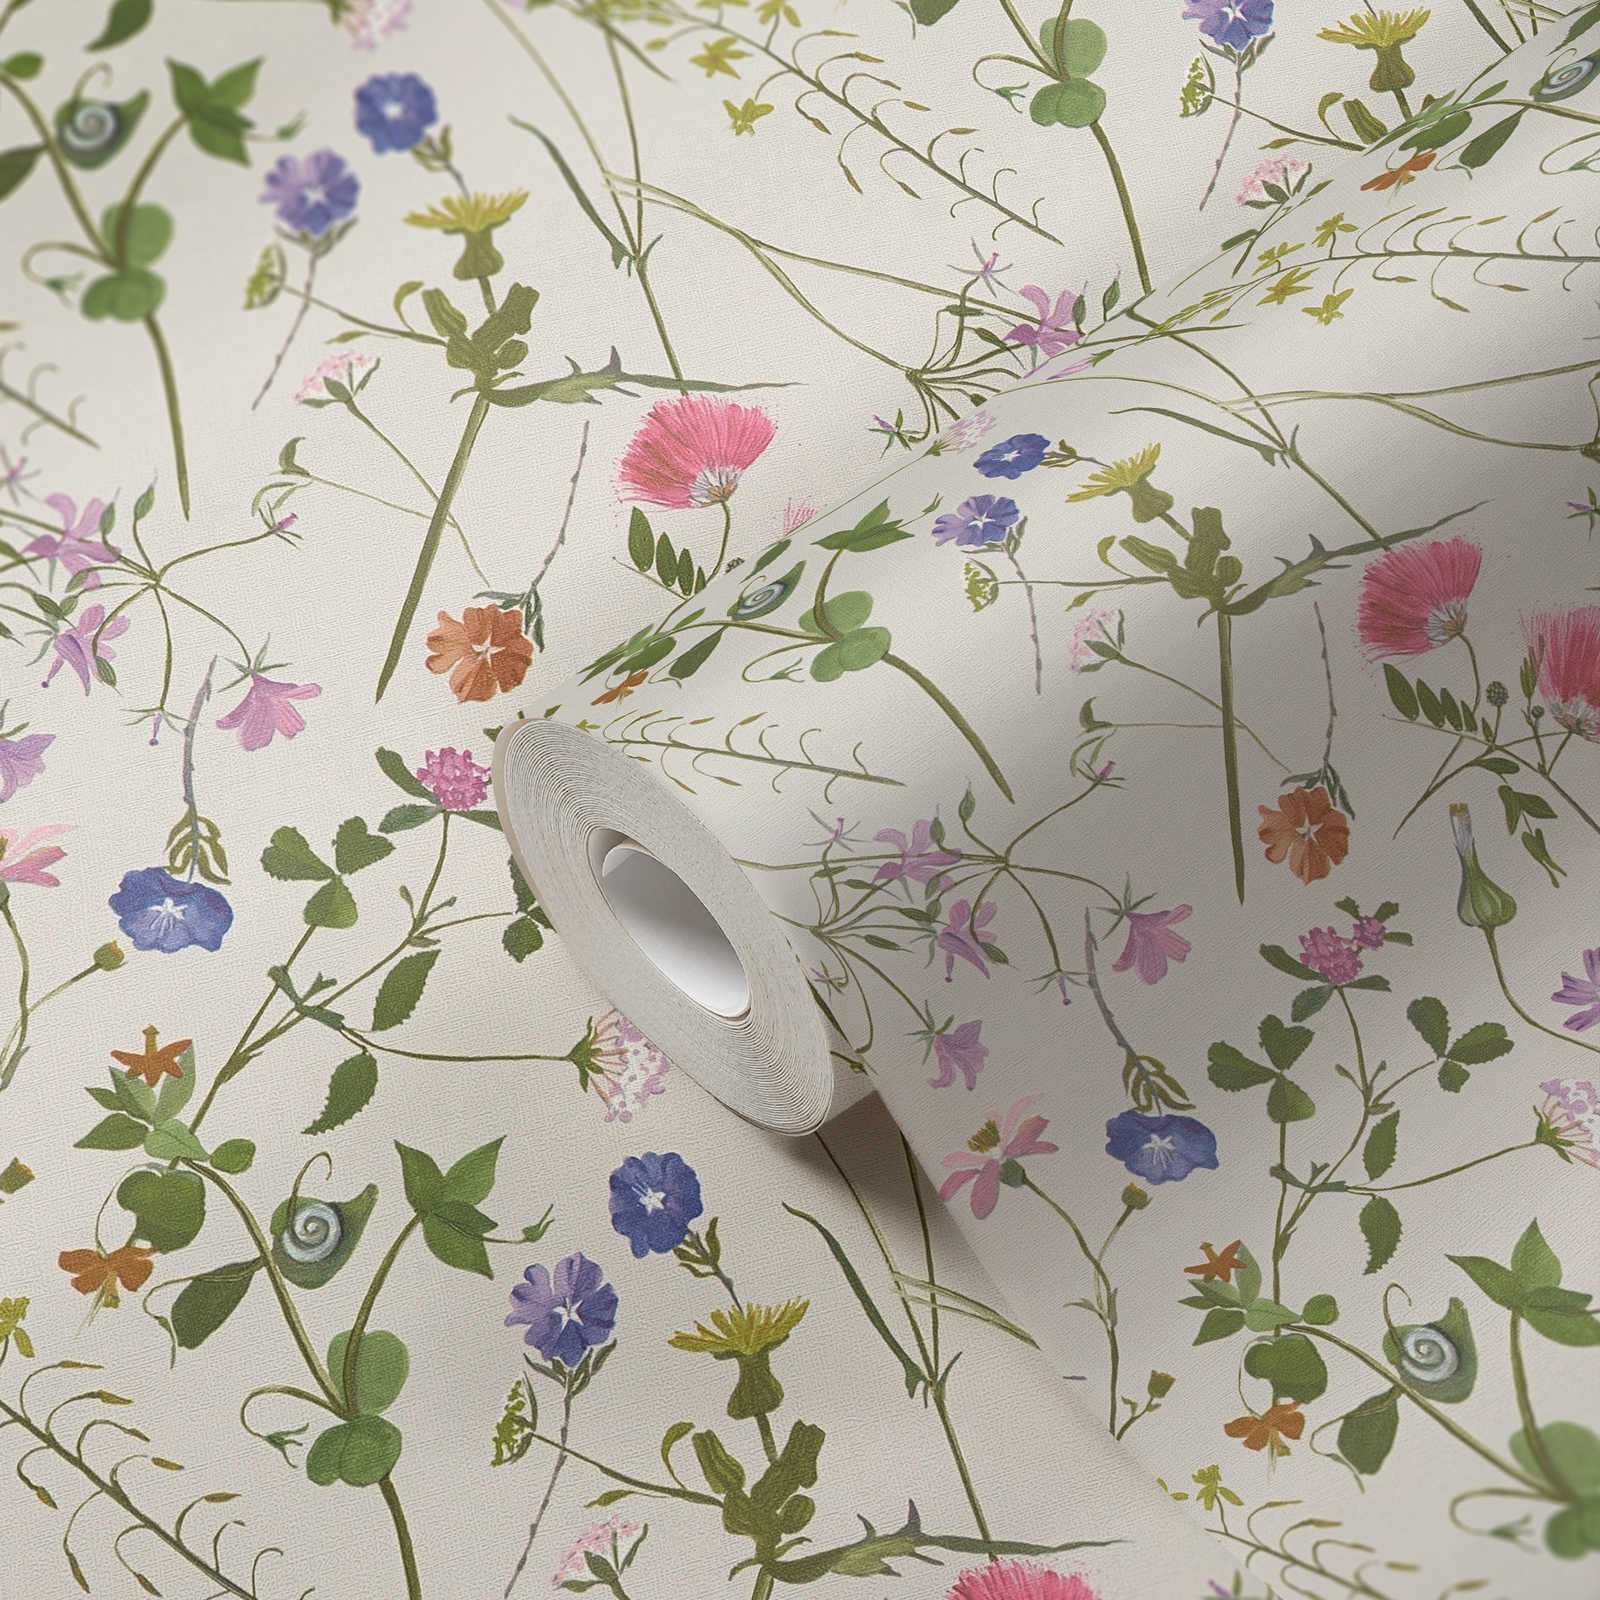             Papier peint intissé avec différentes fleurs et feuilles - crème, vert, multicolore
        